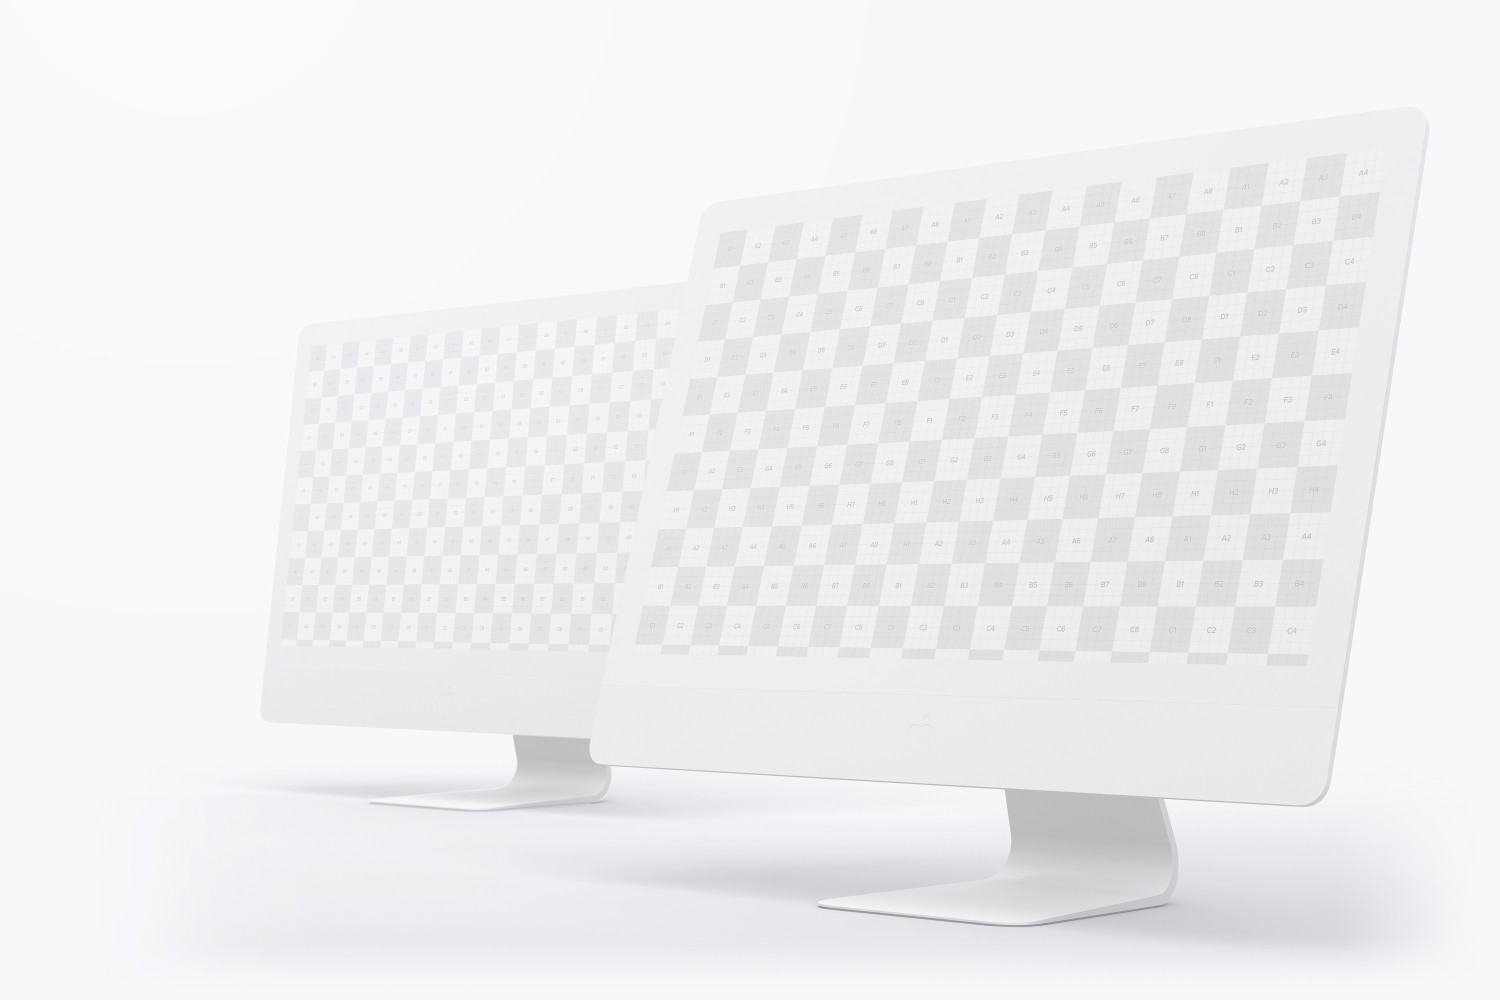 一体机电脑屏幕样机模板v03 Clay iMac 27” Mockup 03设计素材模板